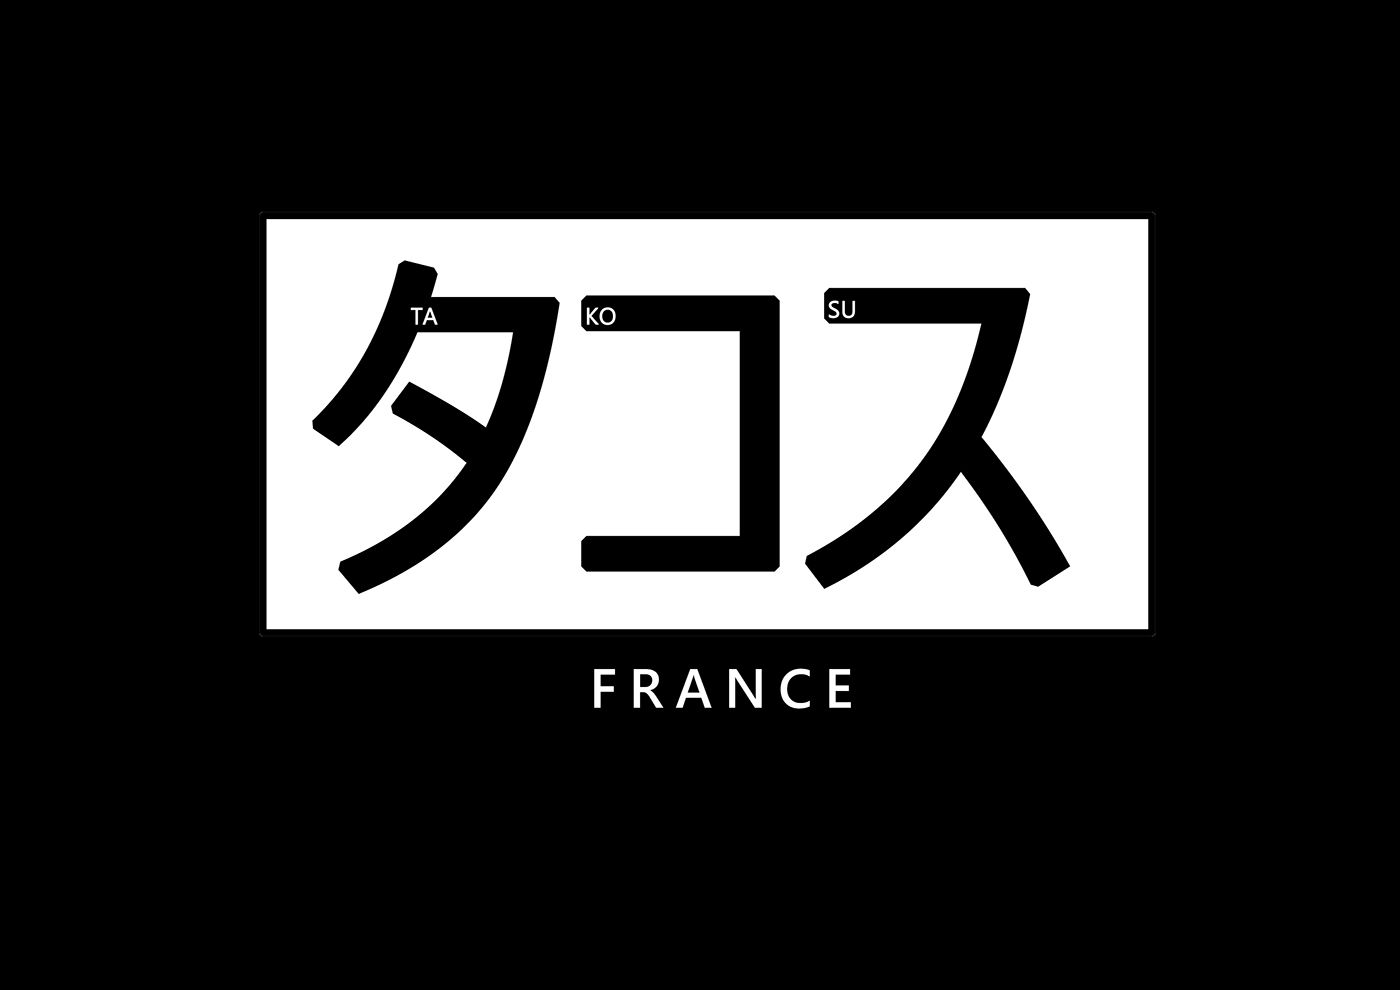 Logo de la team takosu en fond noir texte blanc bordure blanc